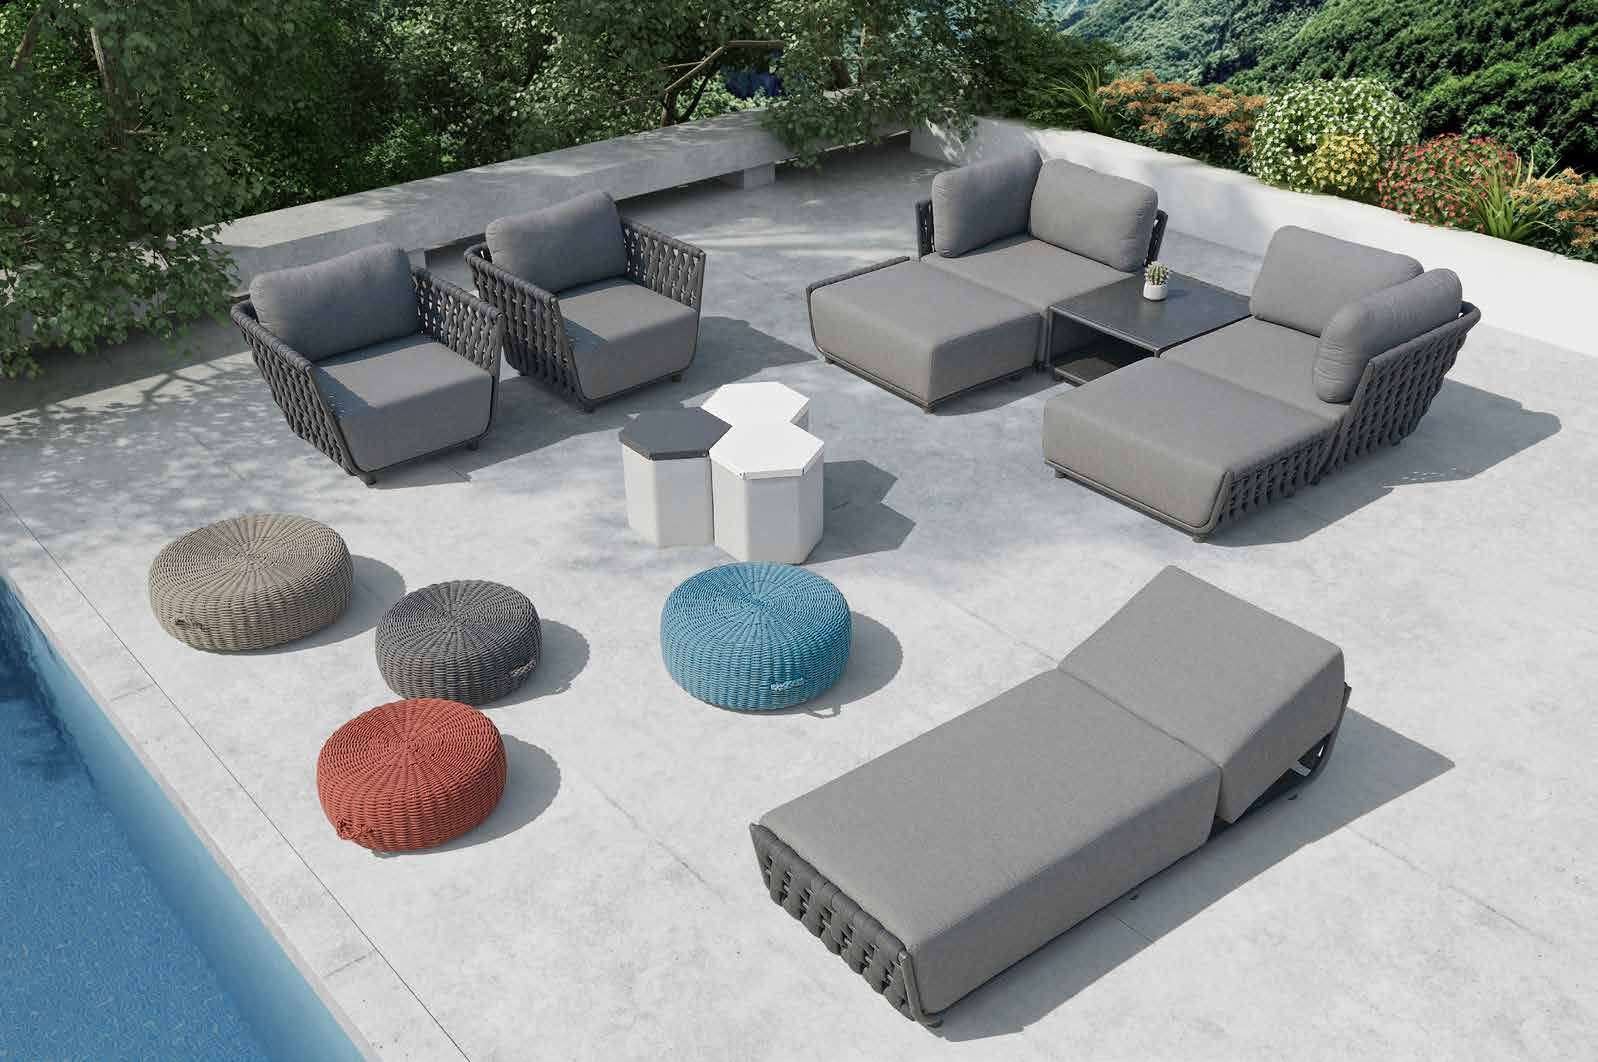 ck910 sofa set.bmp